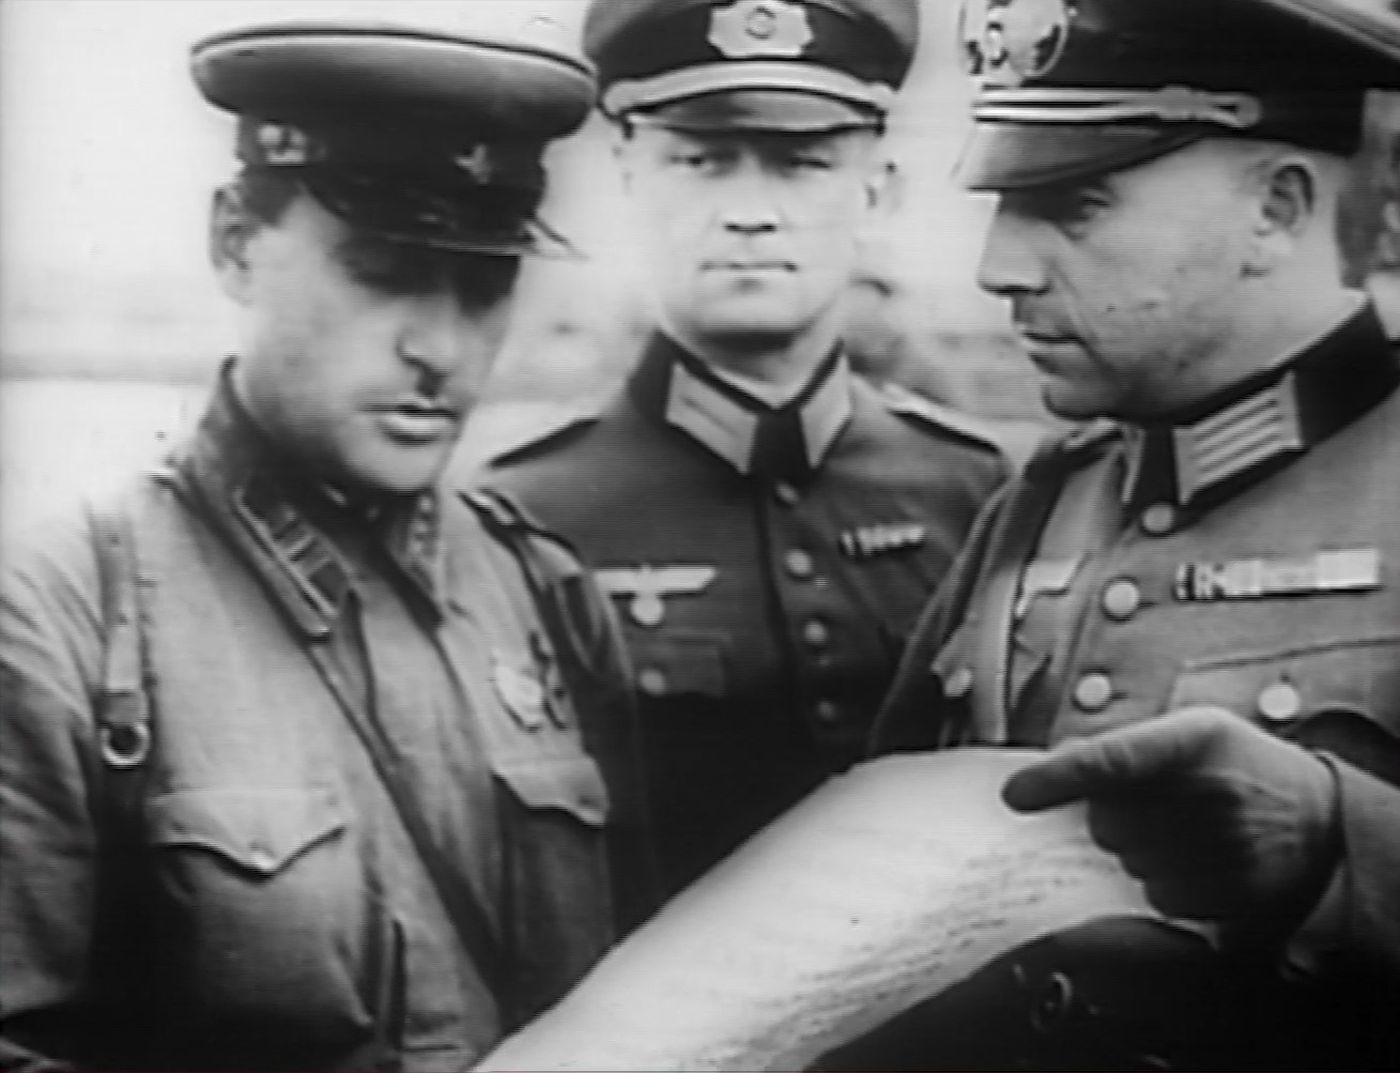 sowieci niemcy 1939 wrzesień - Kadr z programu „Przystanek Historia” w TVP Historia, odc. 39